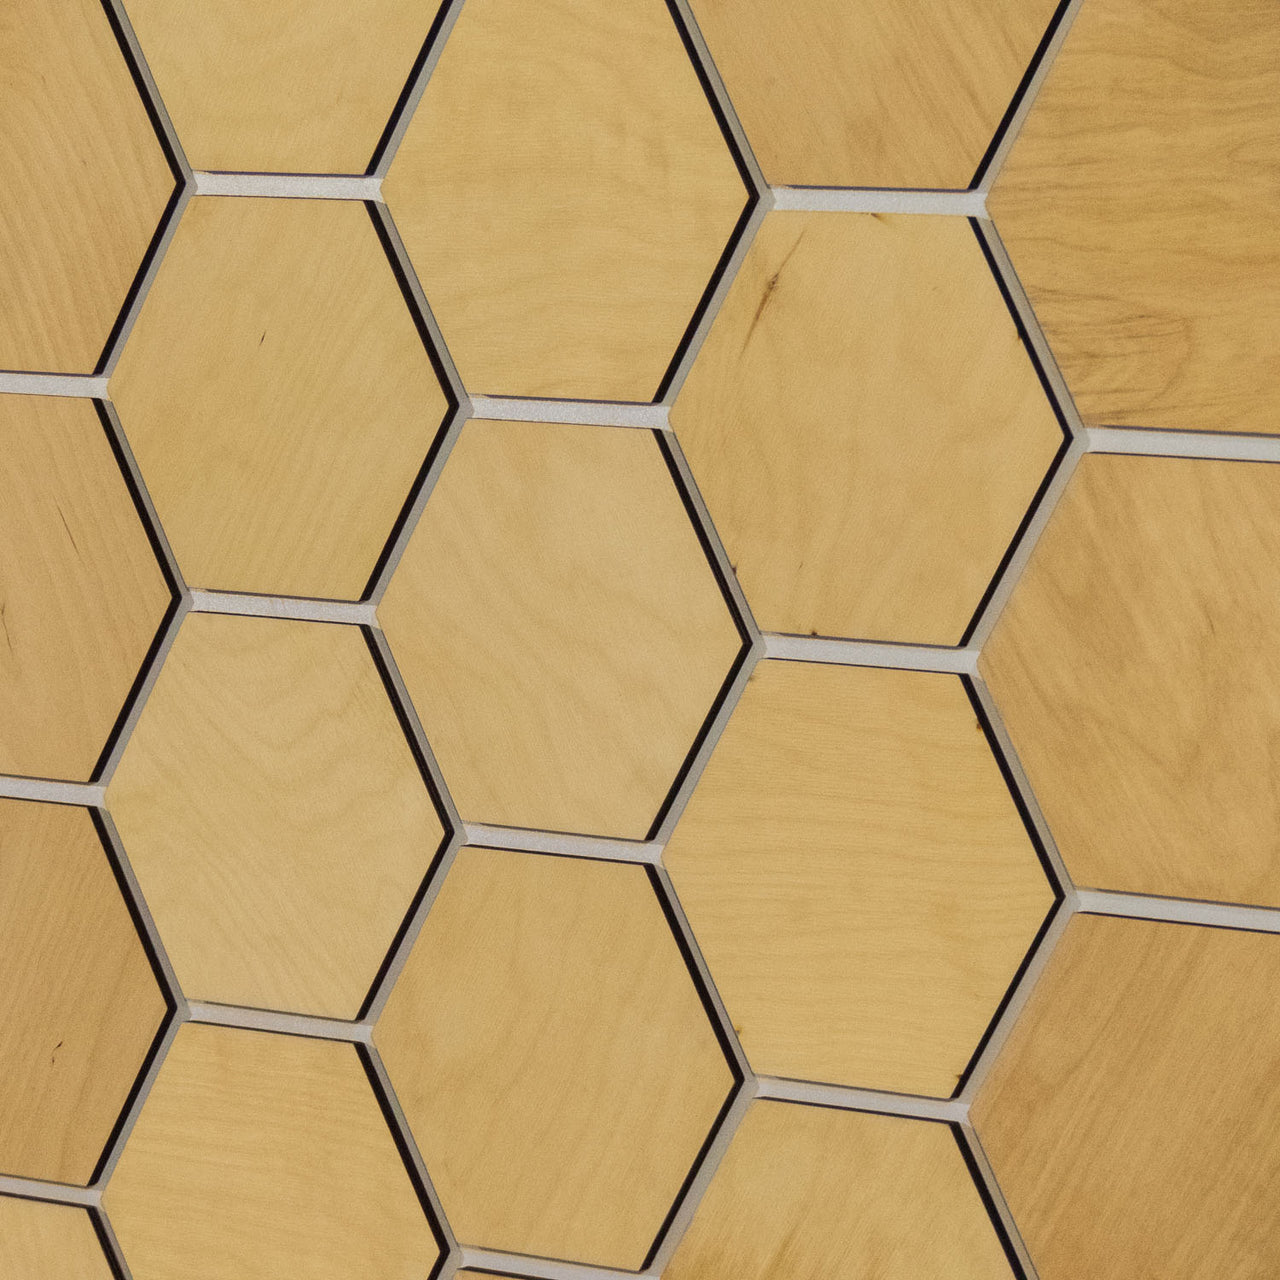 Hexagonal Wooden Wall Panels [32pcs] Birch Dark